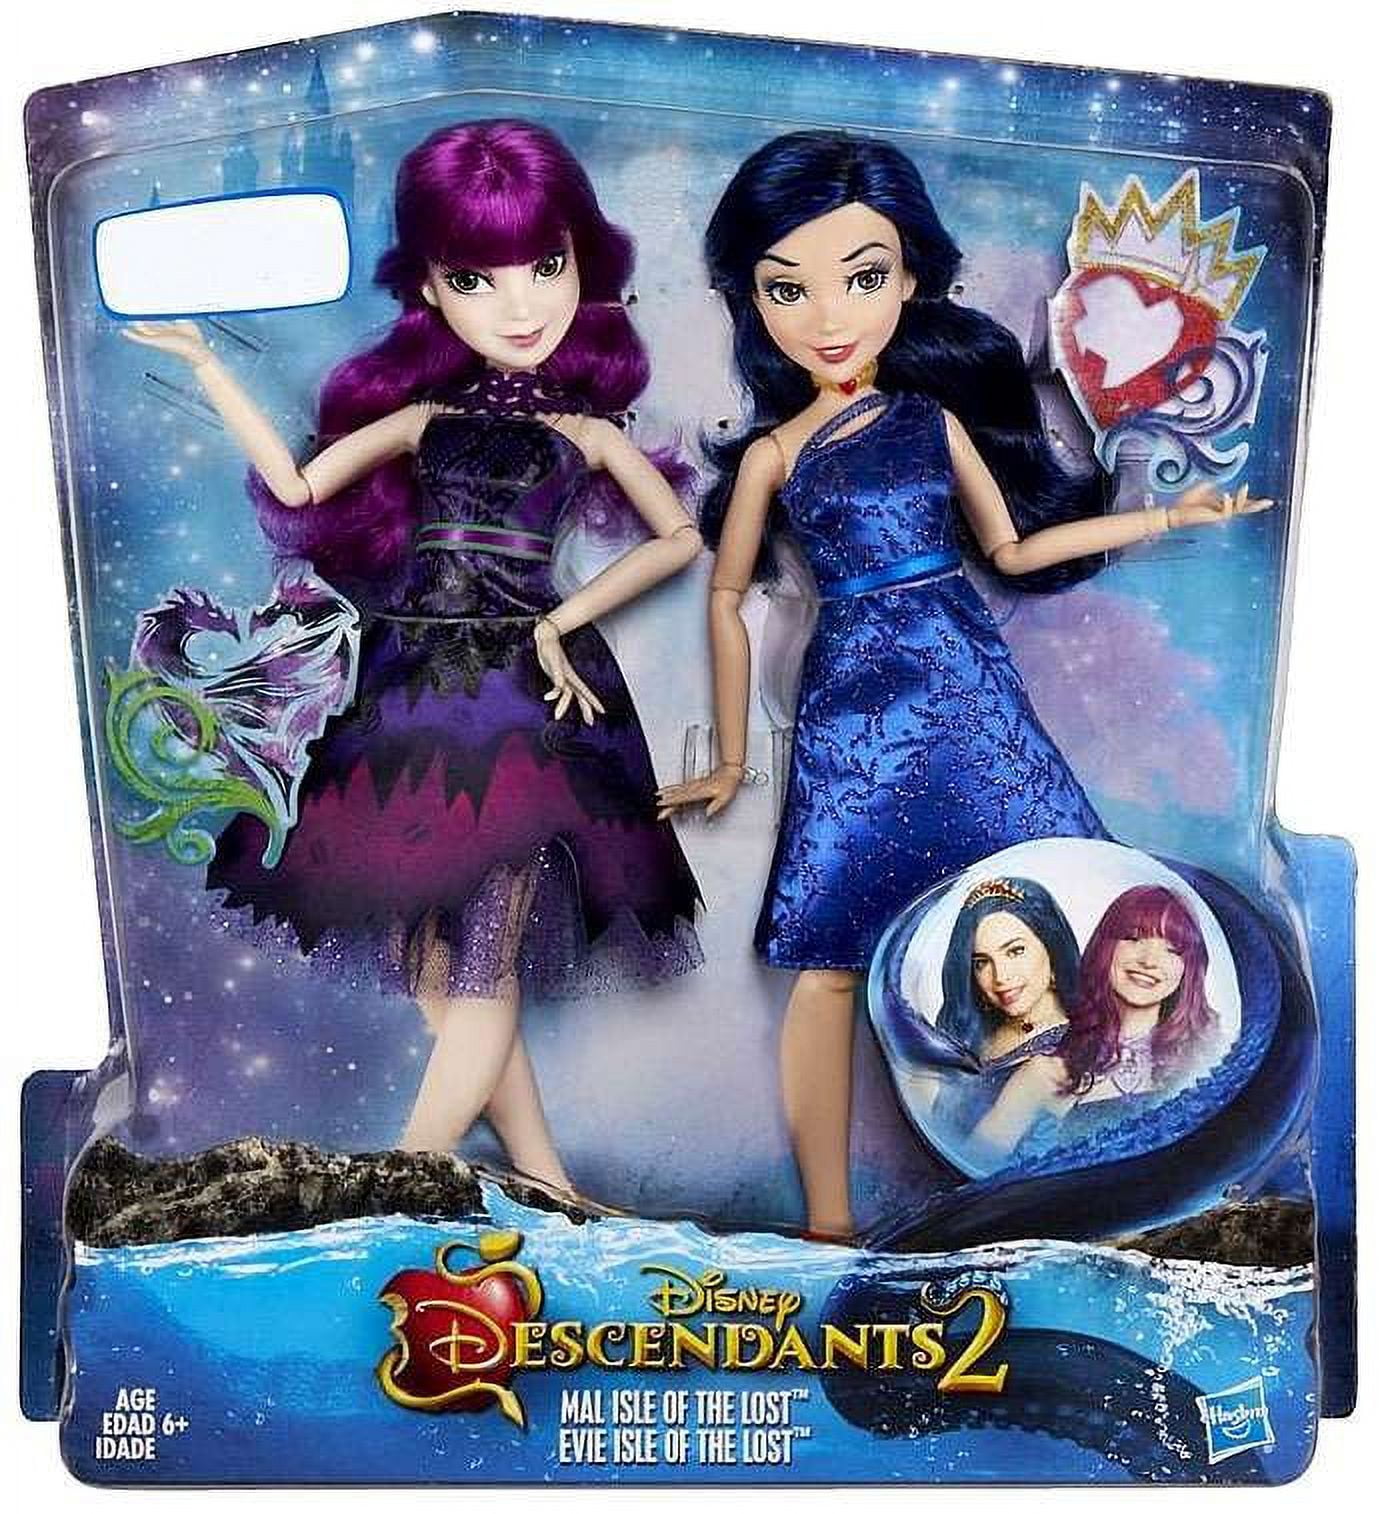 Disney Descendants D2 Movie Dolls Two-Pack Wave 1 Case